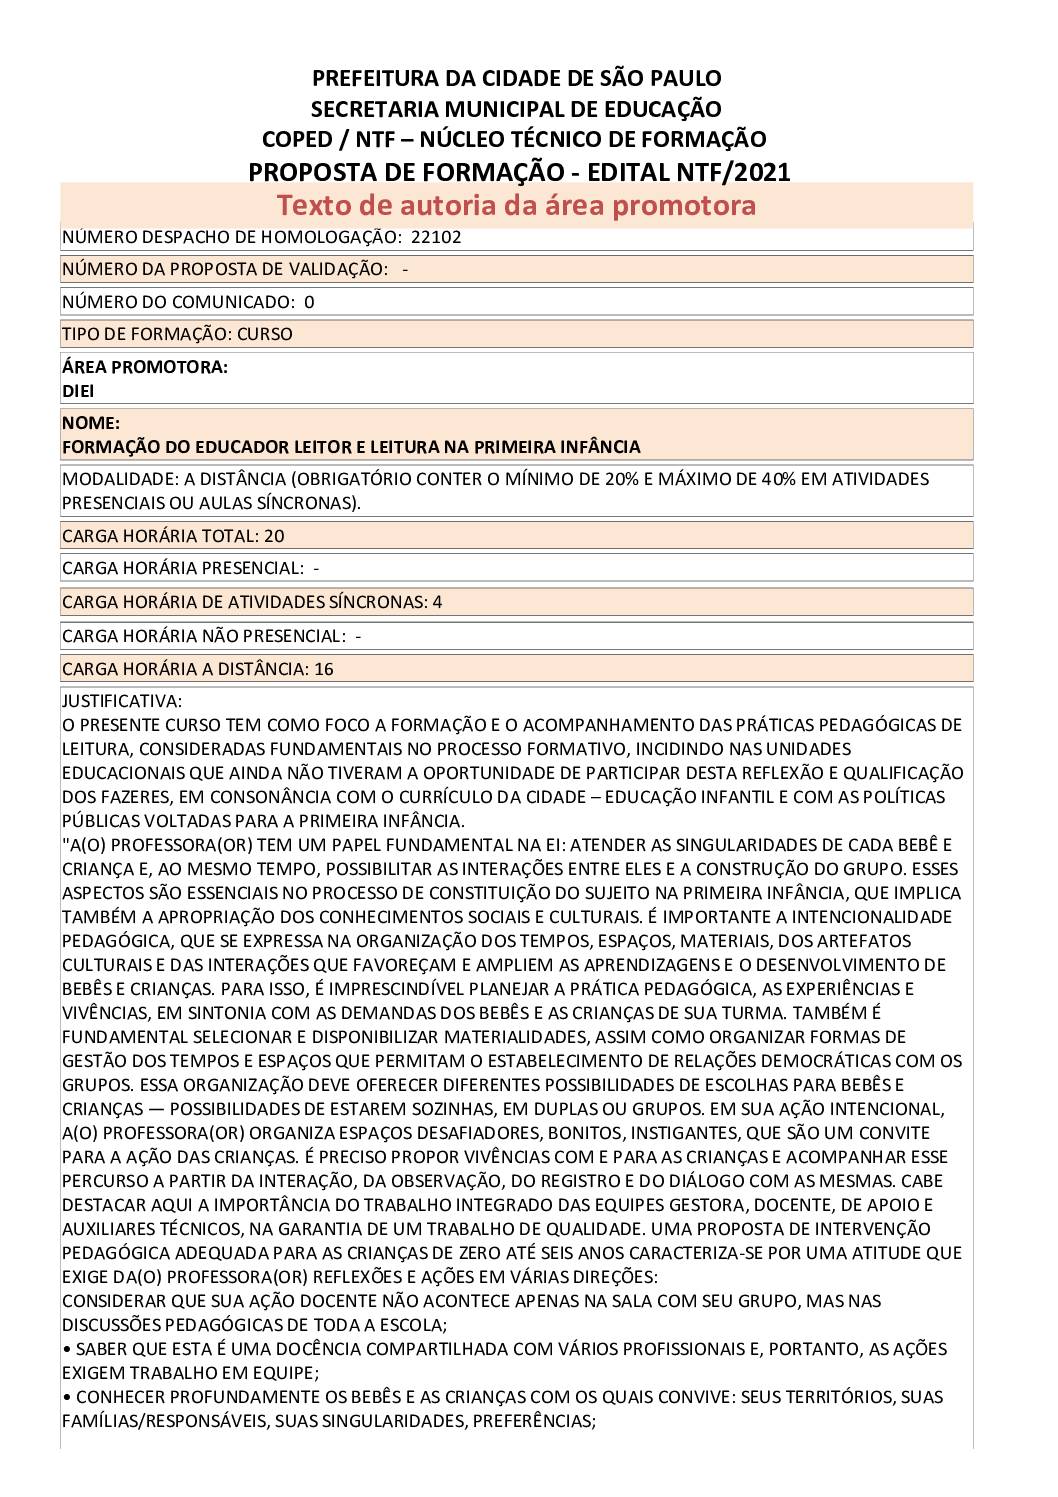 PDF com informações do curso: FORMAÇÃO DO EDUCADOR LEITOR E LEITURA NA PRIMEIRA INFÂNCIA